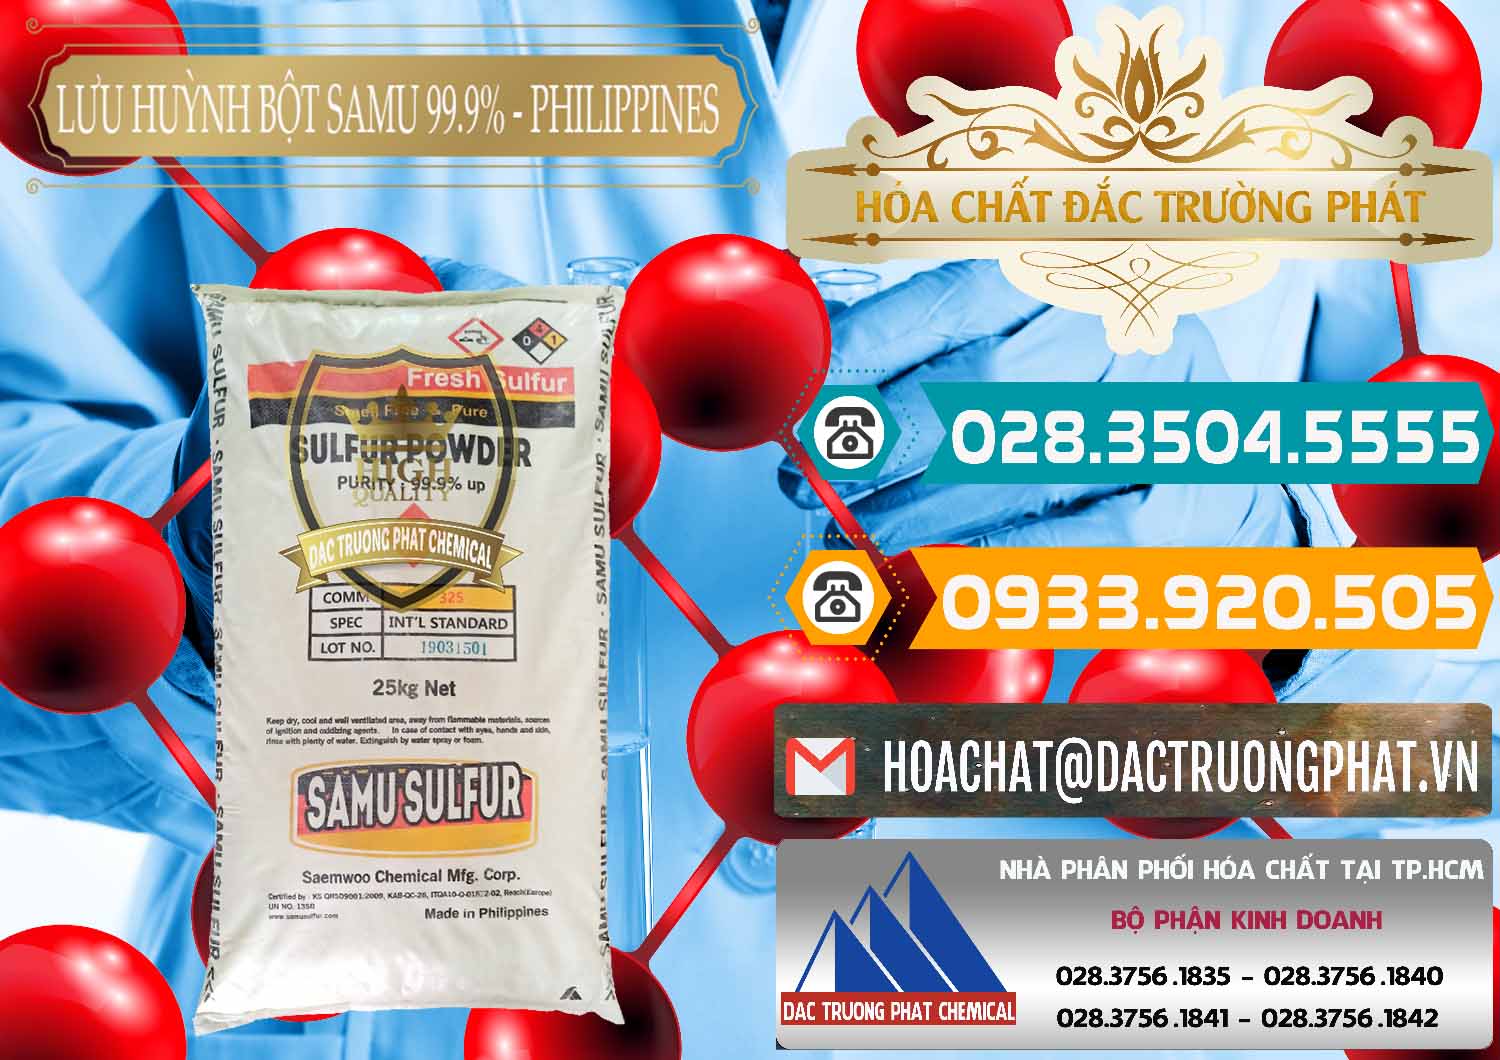 Đơn vị bán ( phân phối ) Lưu huỳnh Bột - Sulfur Powder Samu Philippines - 0201 - Nhà phân phối & cung cấp hóa chất tại TP.HCM - congtyhoachat.vn